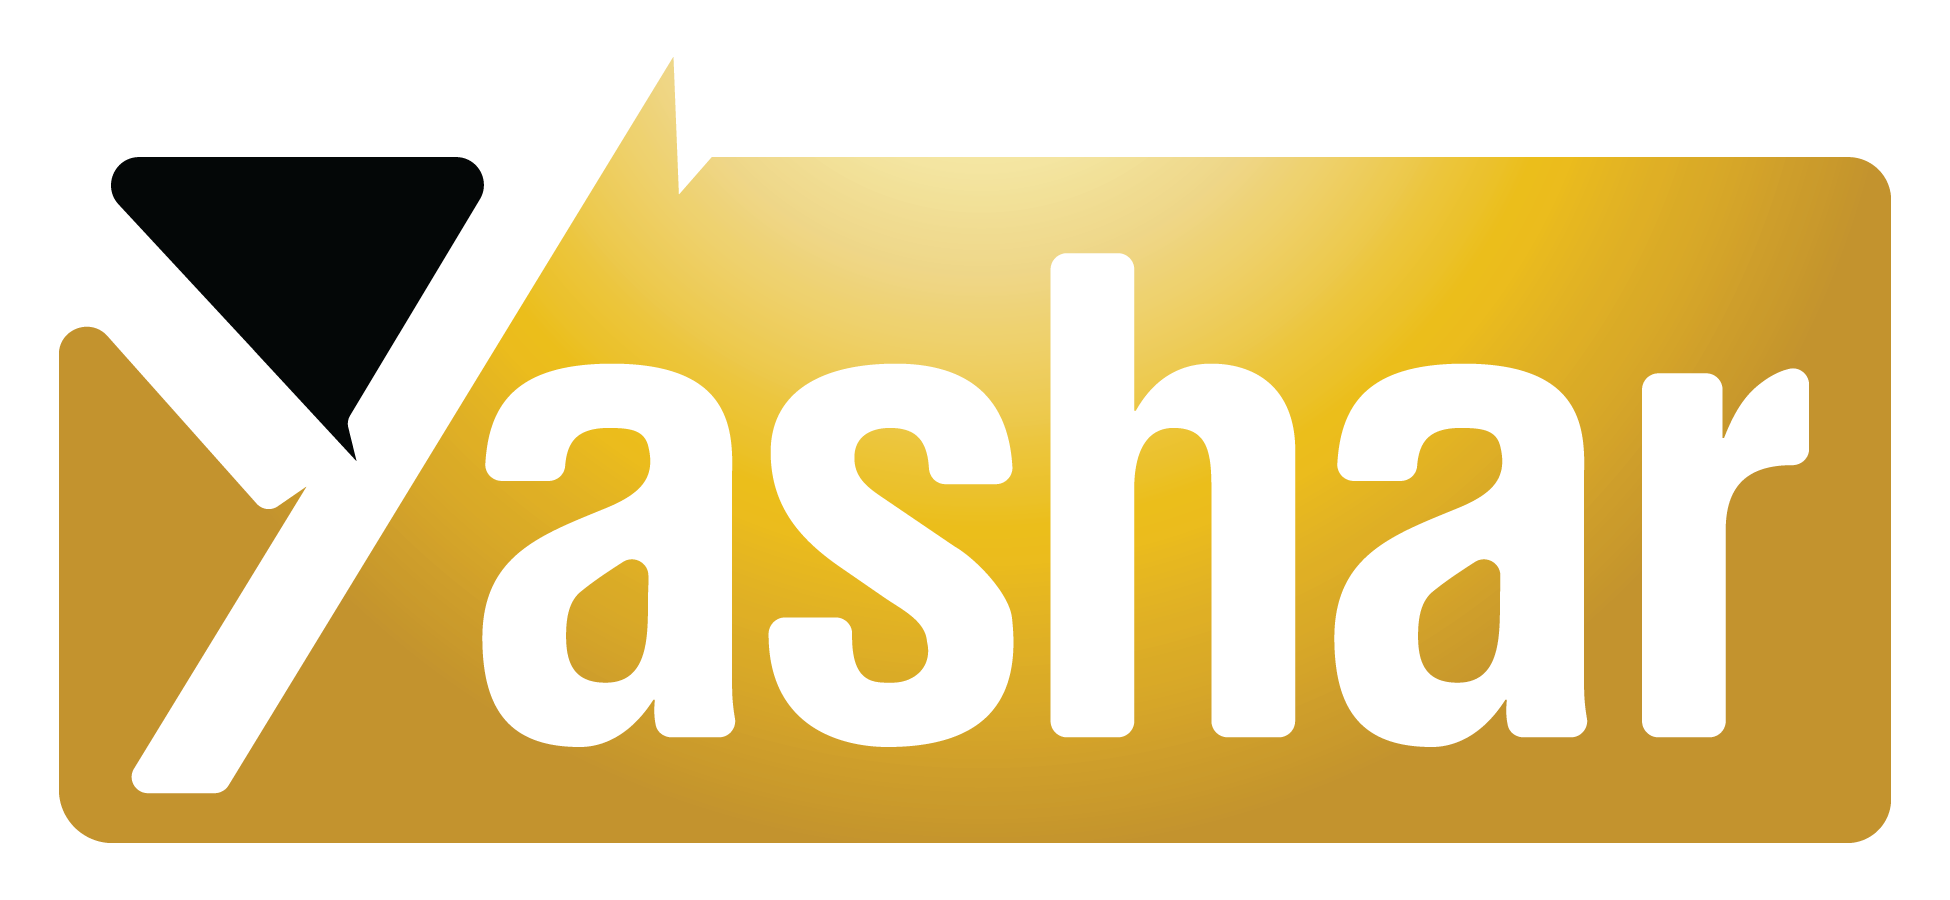 yashar